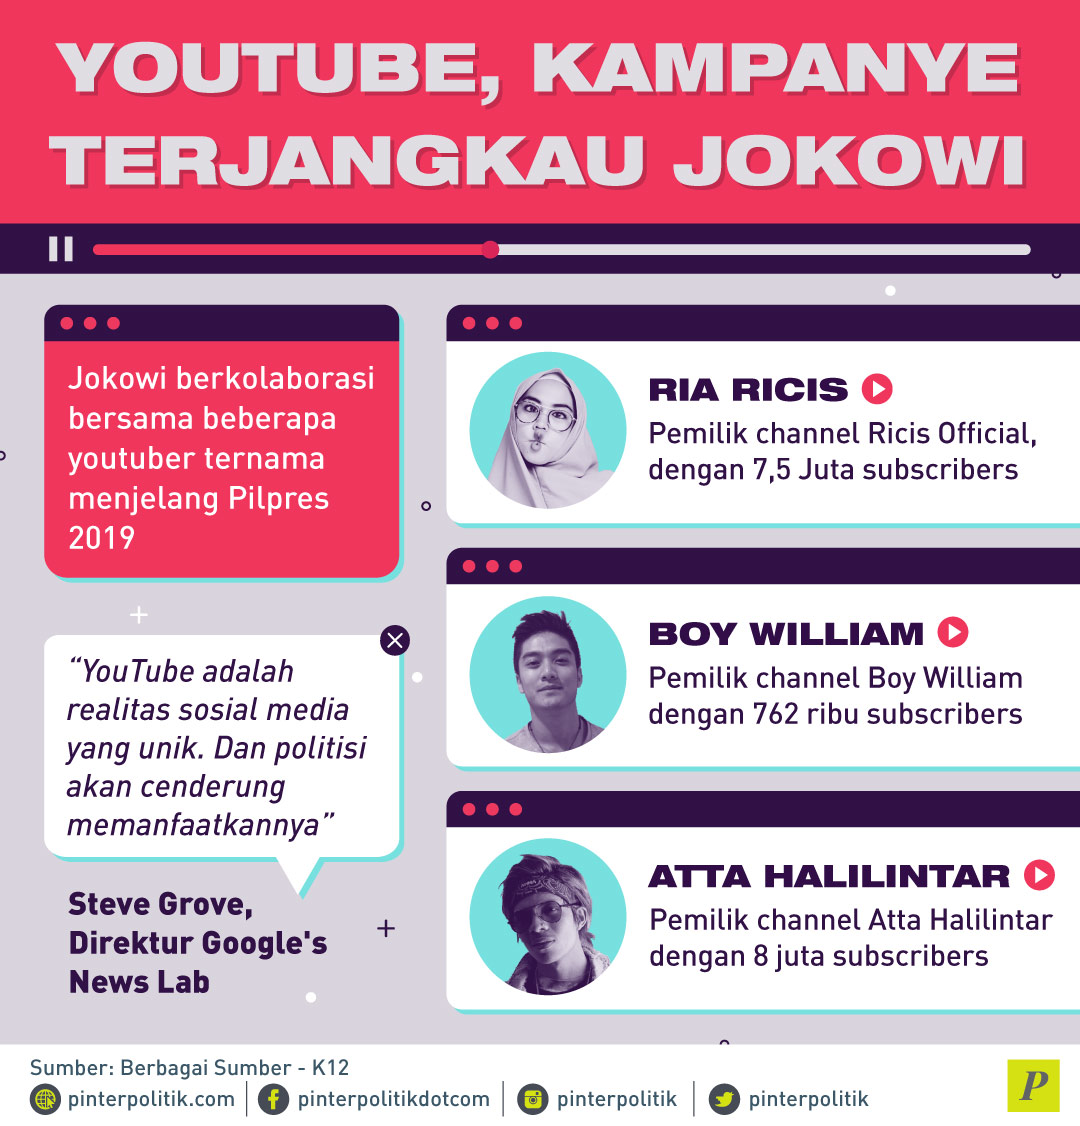 YouTube, Kampanye Terjangkau Jokowi